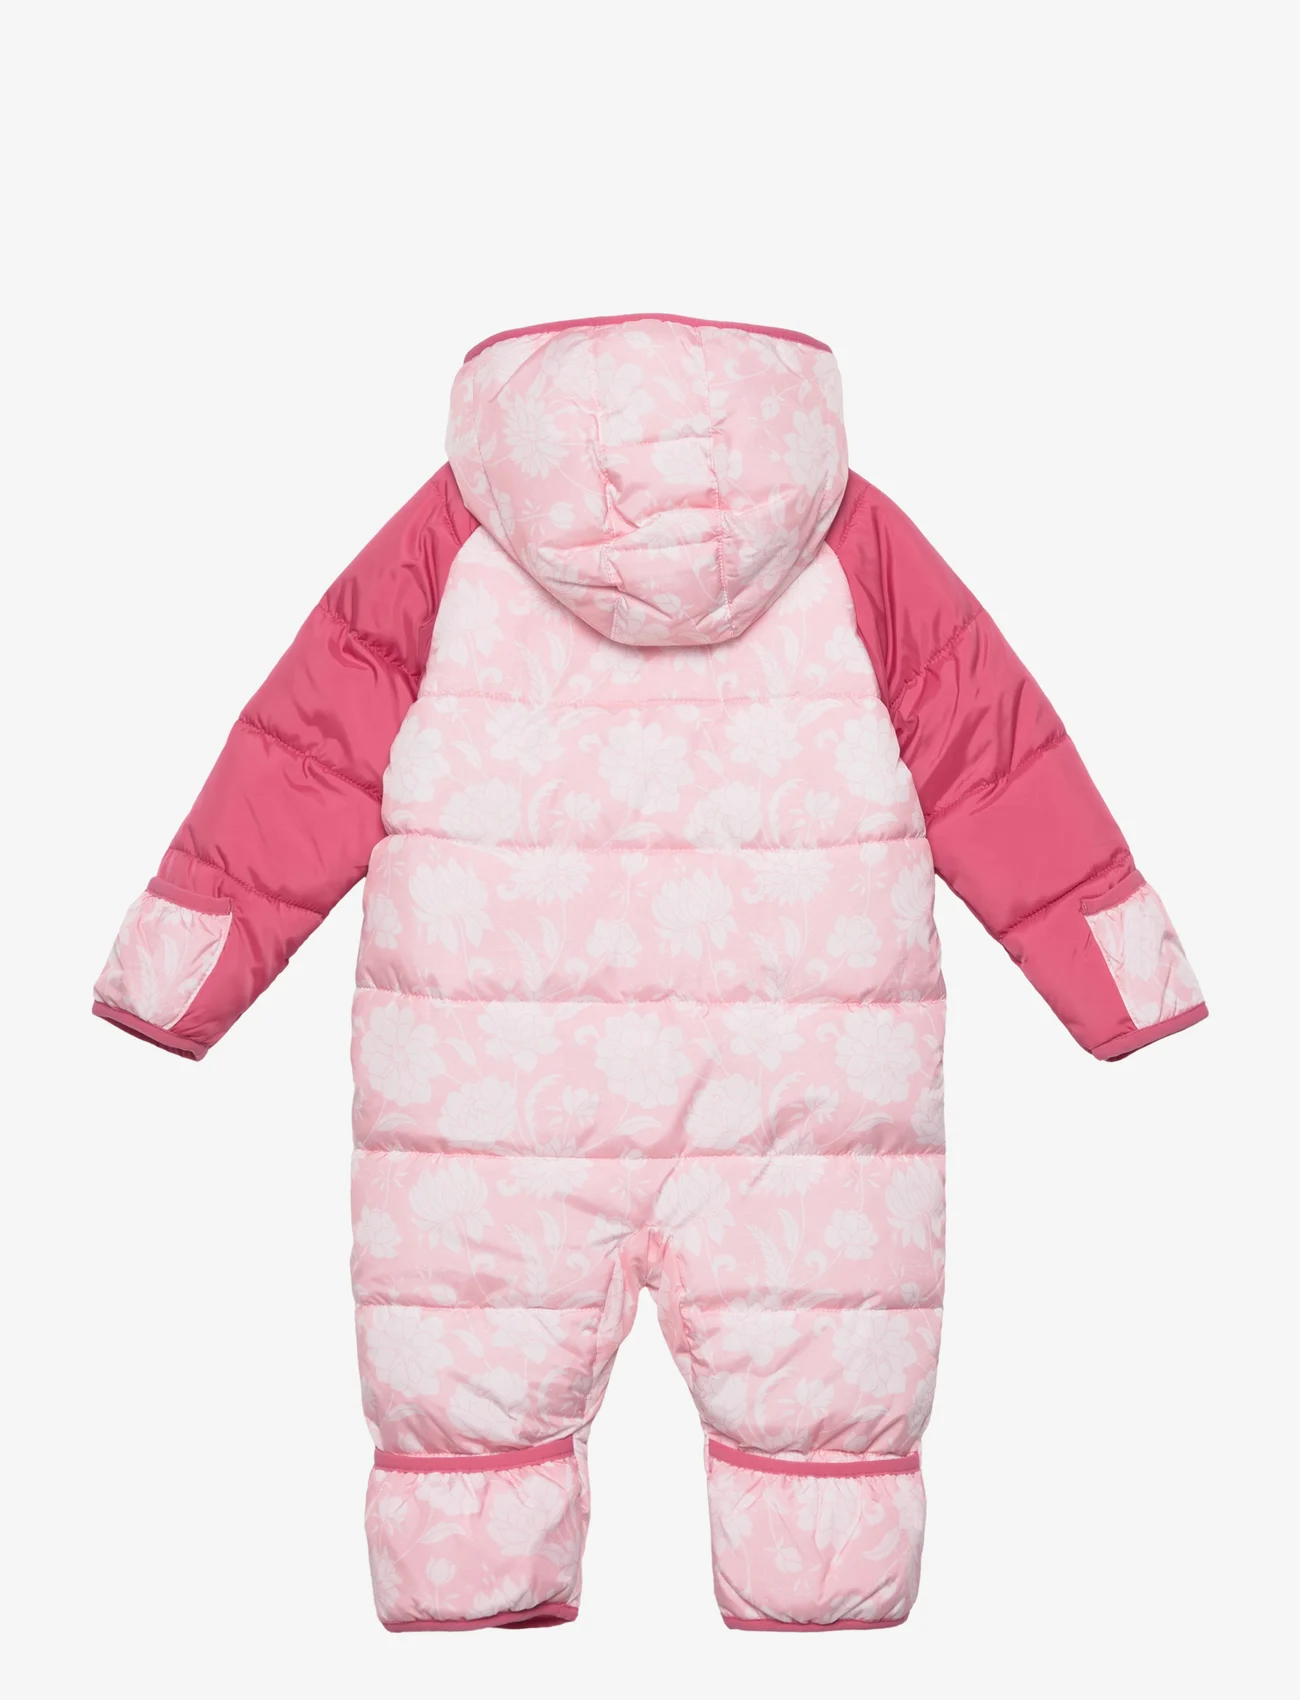 Levi's - Levi's® Baby Snowsuit - vinteroveraller - pink - 1